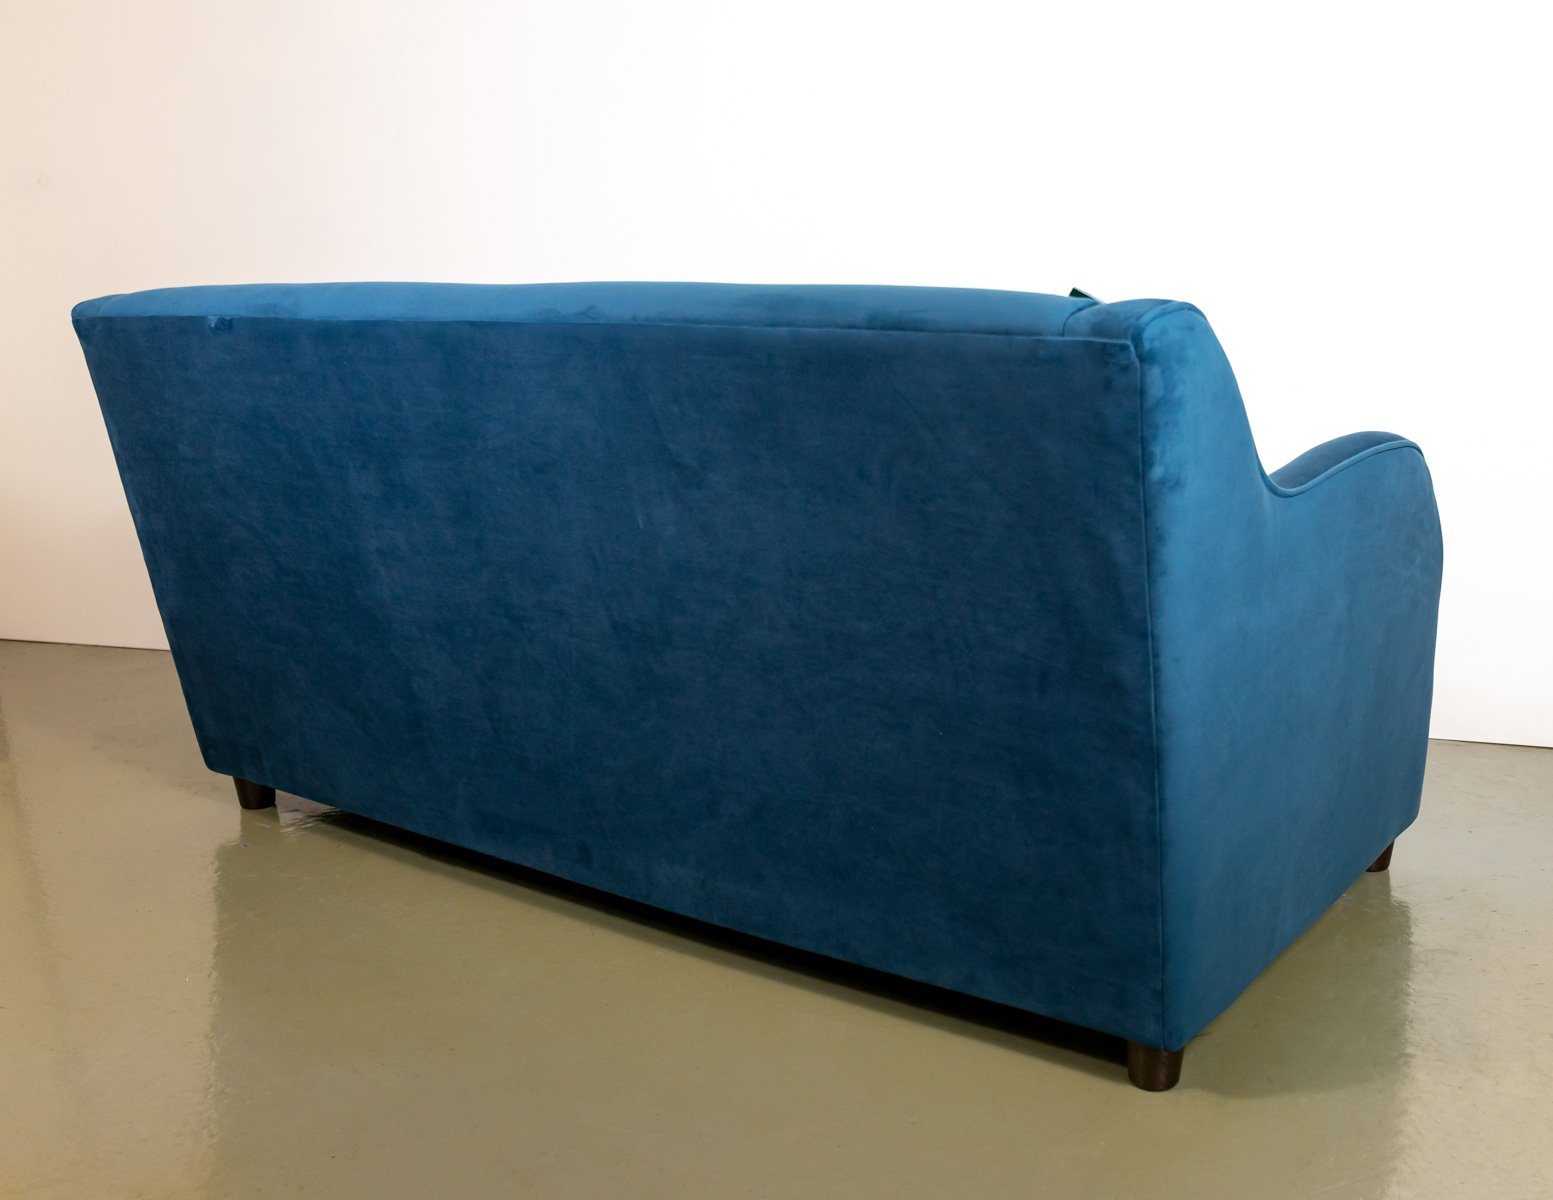 Brand New Made.com Helena  3 Seater Sofa Bed